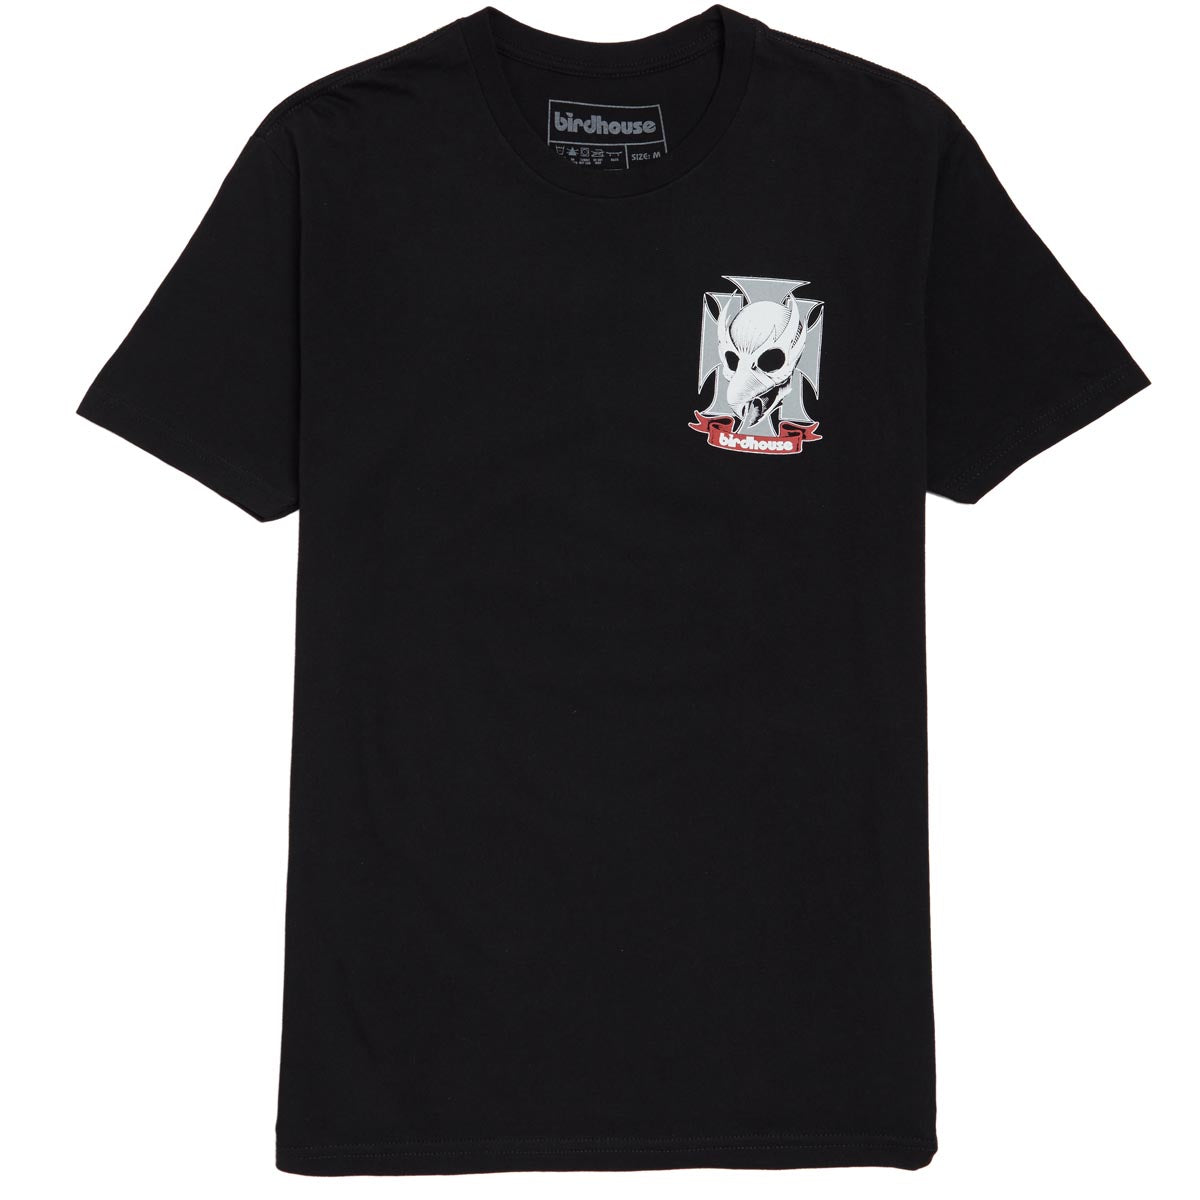 Birdhouse Falcon Crest T-Shirt - Black image 1